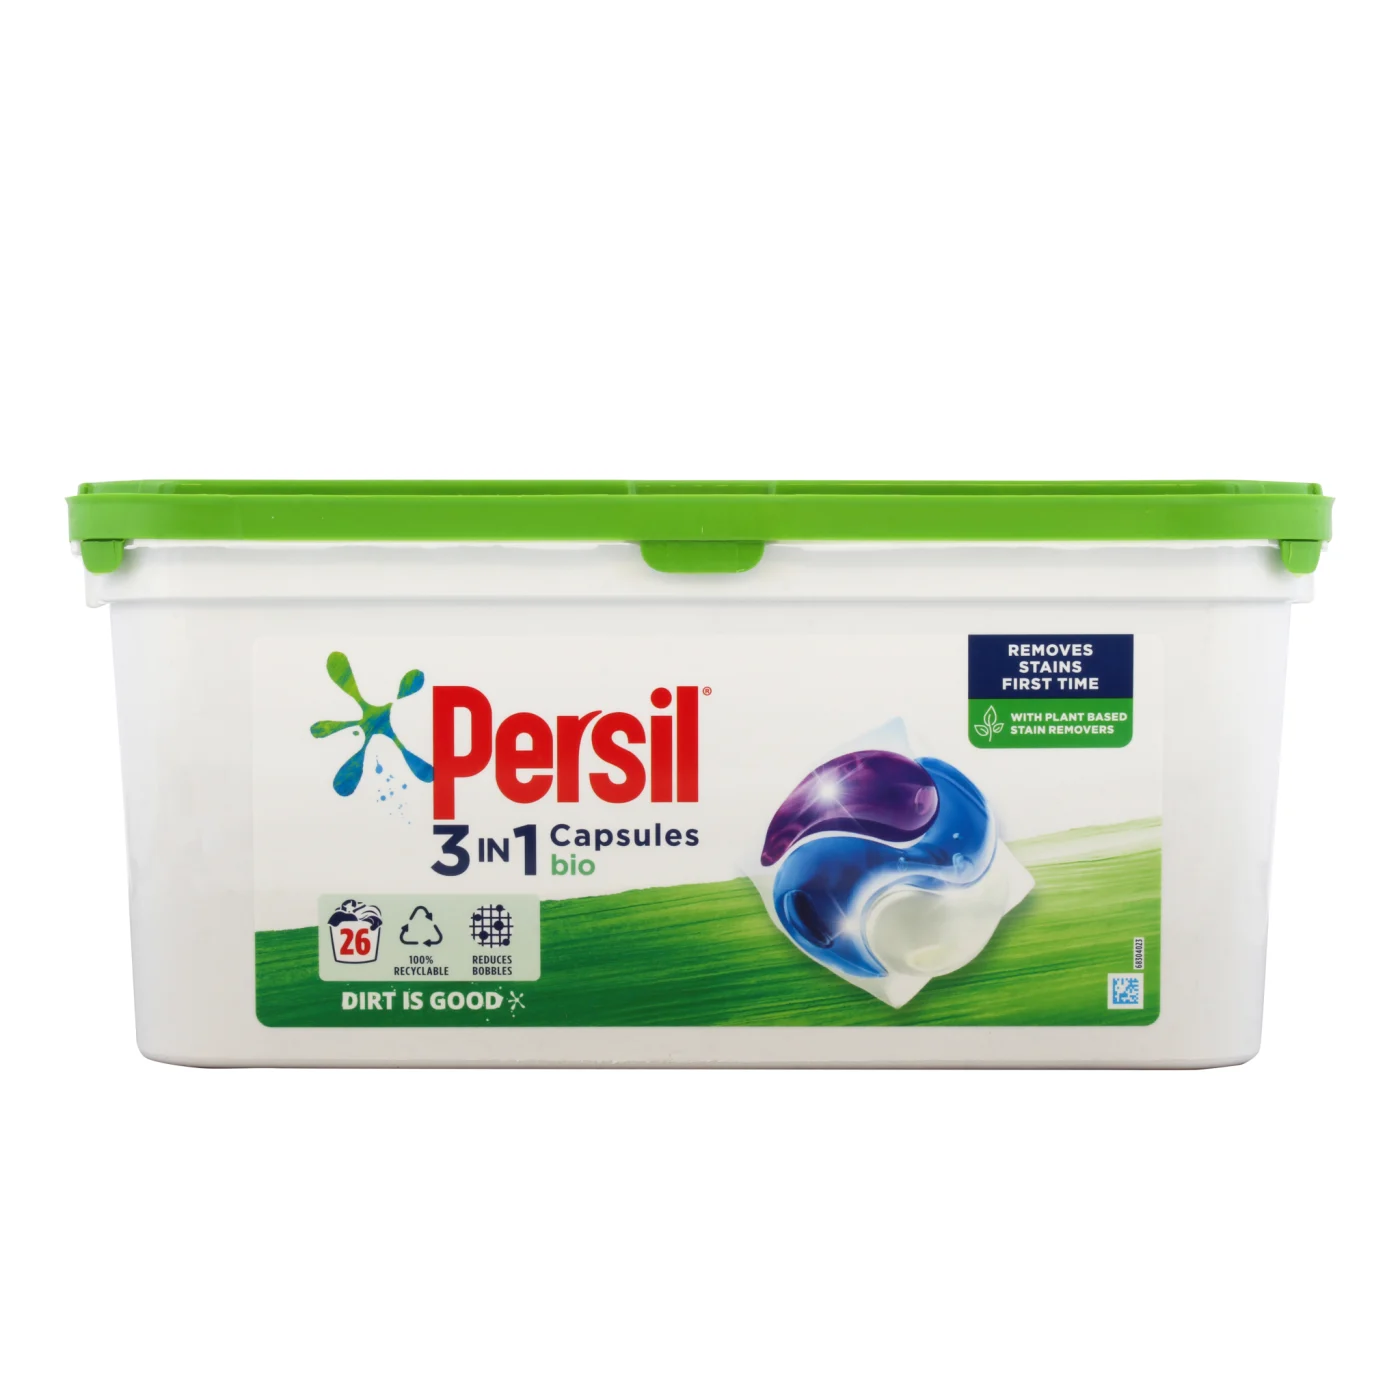 Persil Bio Laundry Washing Capsules, 26 Washes